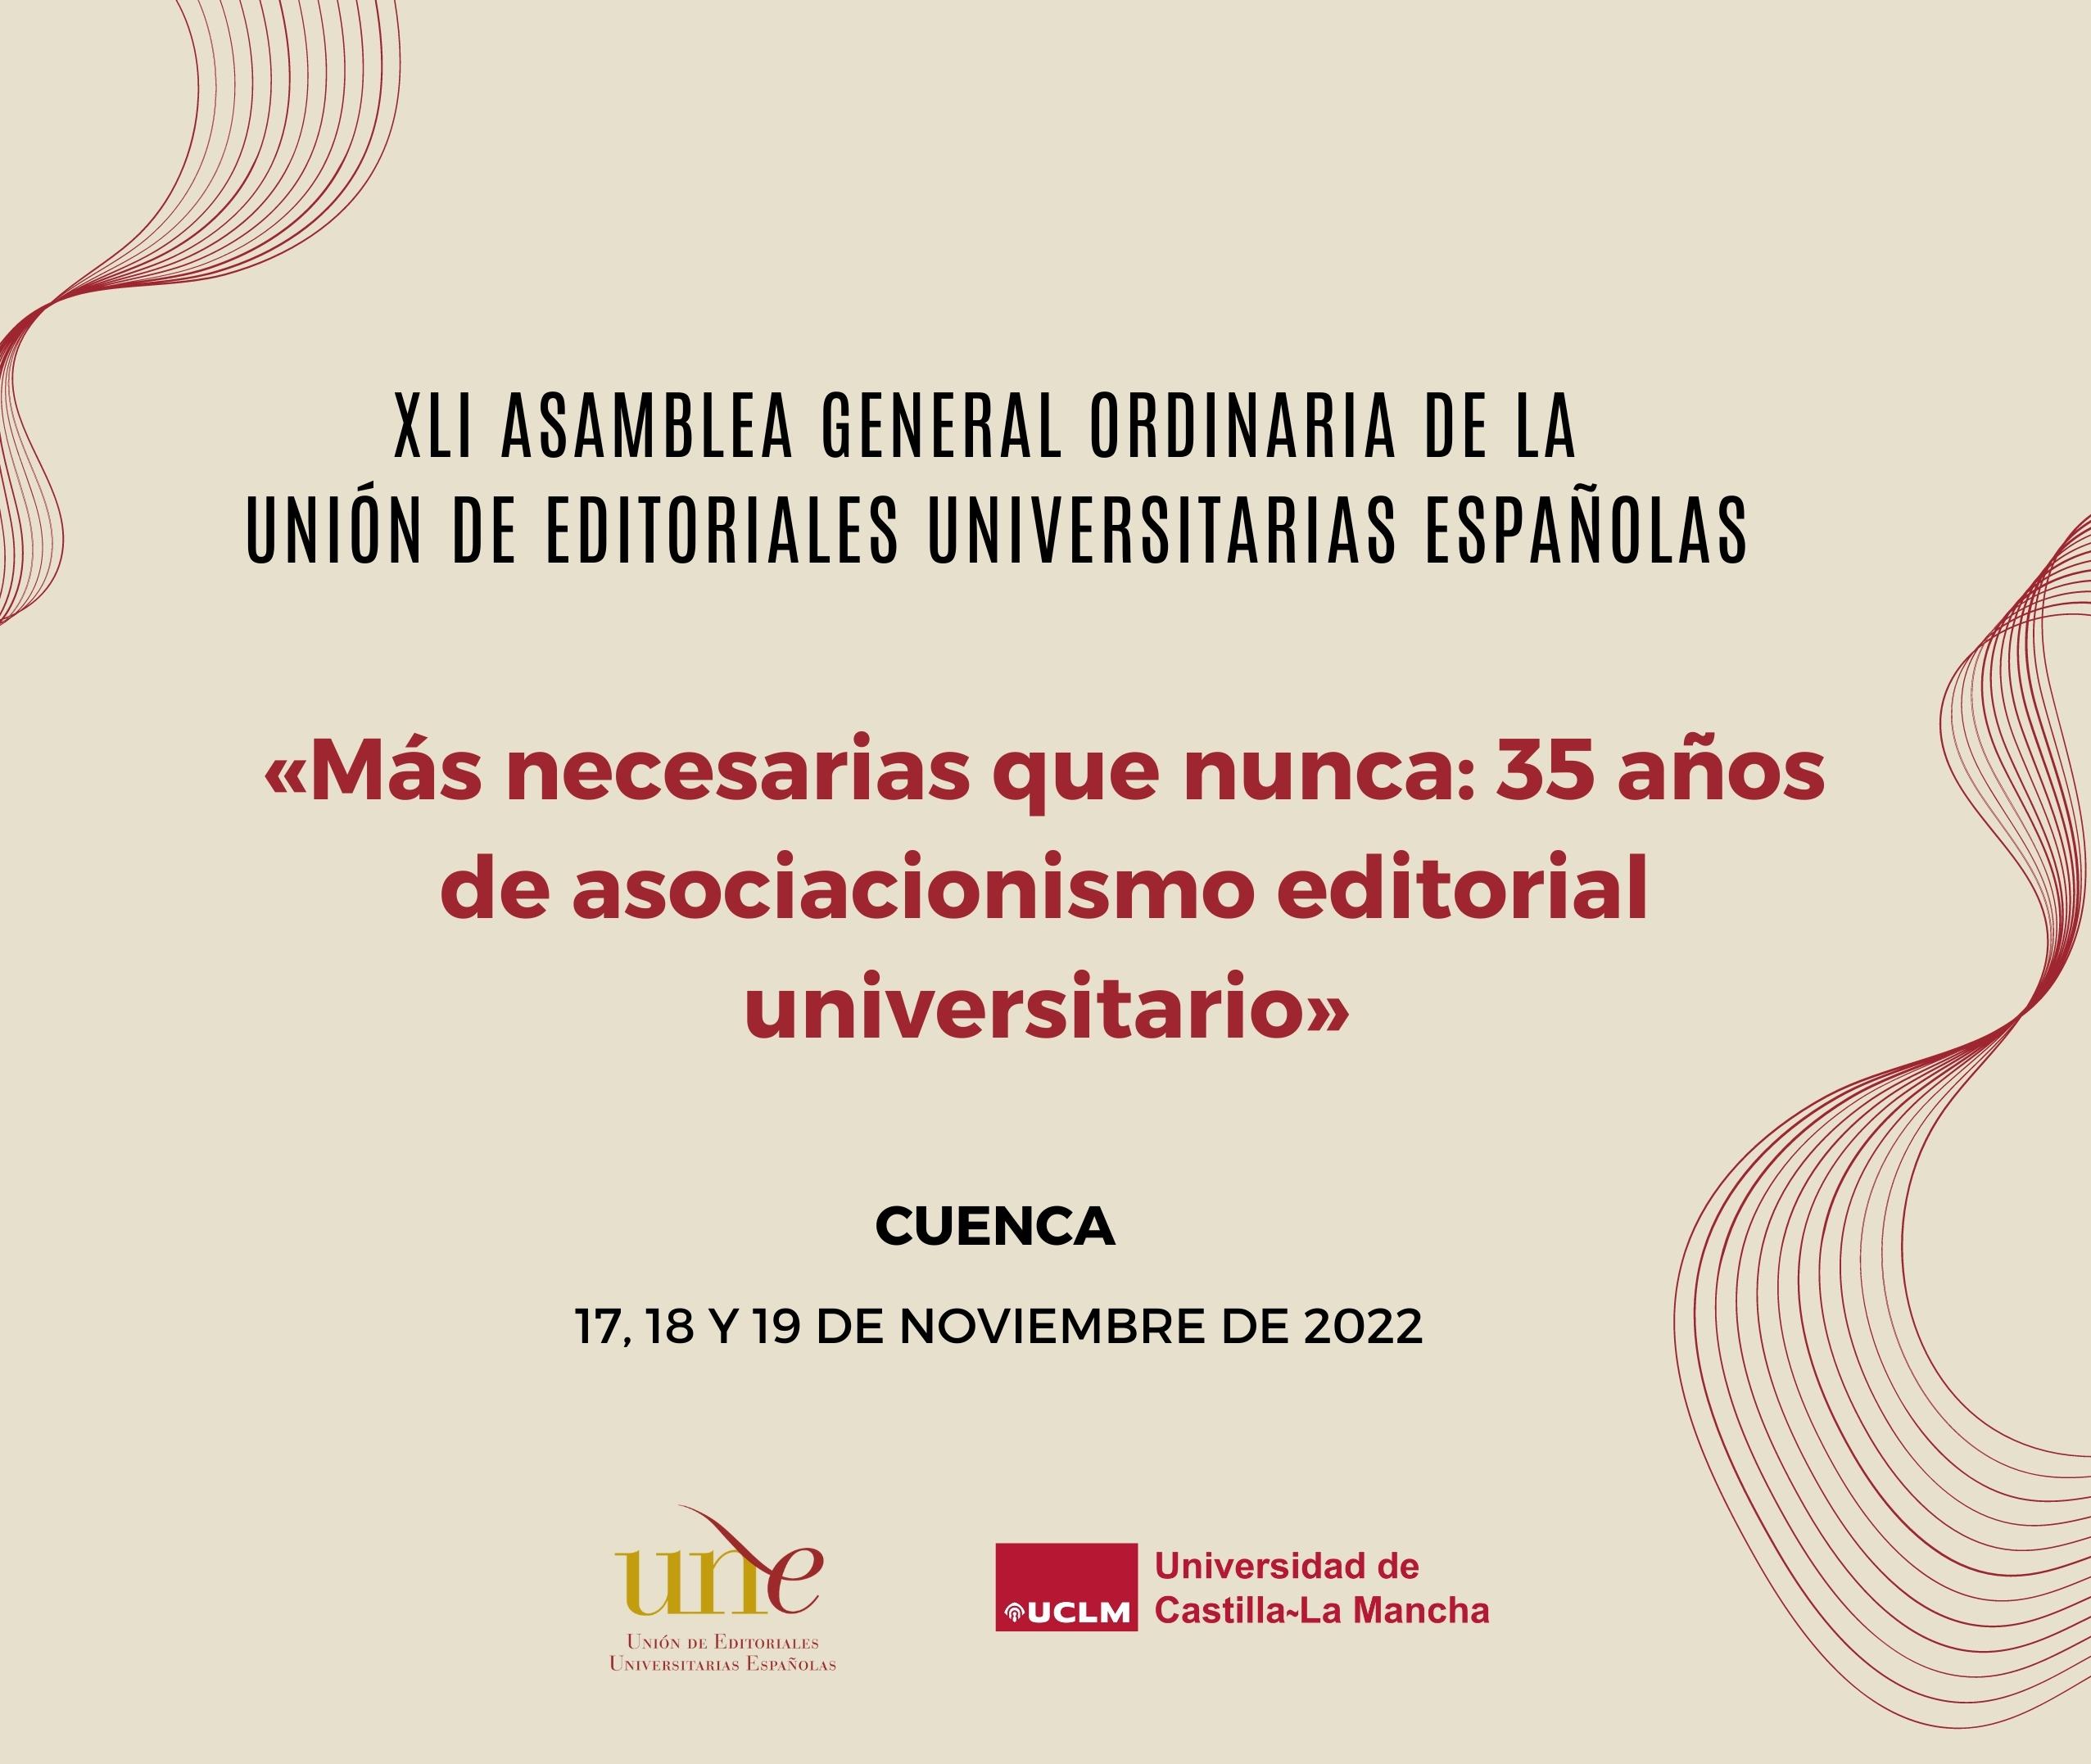 xli_asamblea_general_ordinaria_de_la_union_de_editoriales_universitarias_espanolas